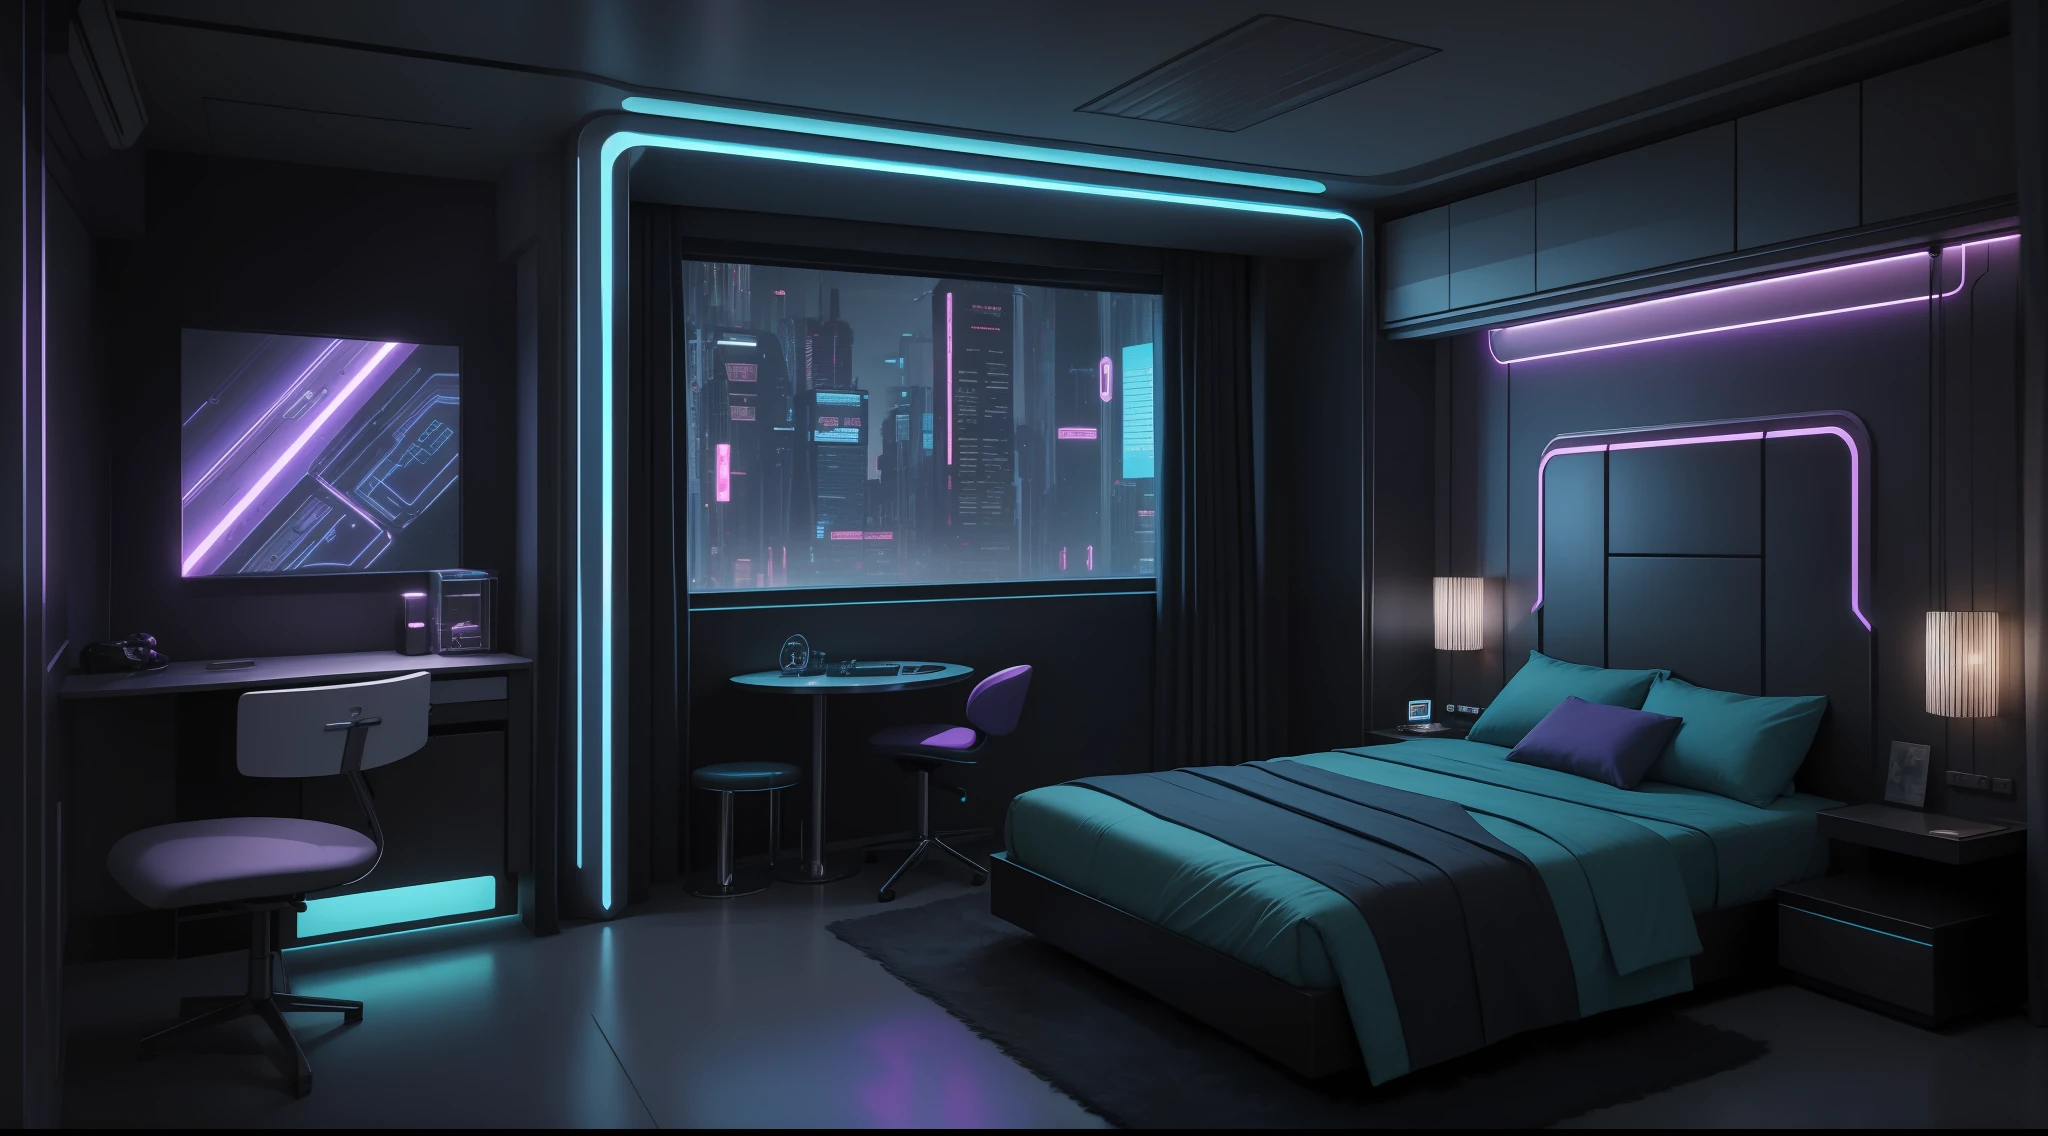 Hay un dormitorio con una cama y una silla en él, habitación futurista, habitación futurista background, Acogedor 9 0 s dormitorio retrofuturismo, decoración futurista, apartamento retro futurista, futuristic interior, dormitorio adolescente cyberpunk, habitación temática galaxia, decoración futuristaation, dormitorio infantil cyberpunk, apartamento ciberpunk, ambiente futurista, the apartamento ciberpunk, en una habitación temática cyberpunk, sala de estar de aspecto futurista